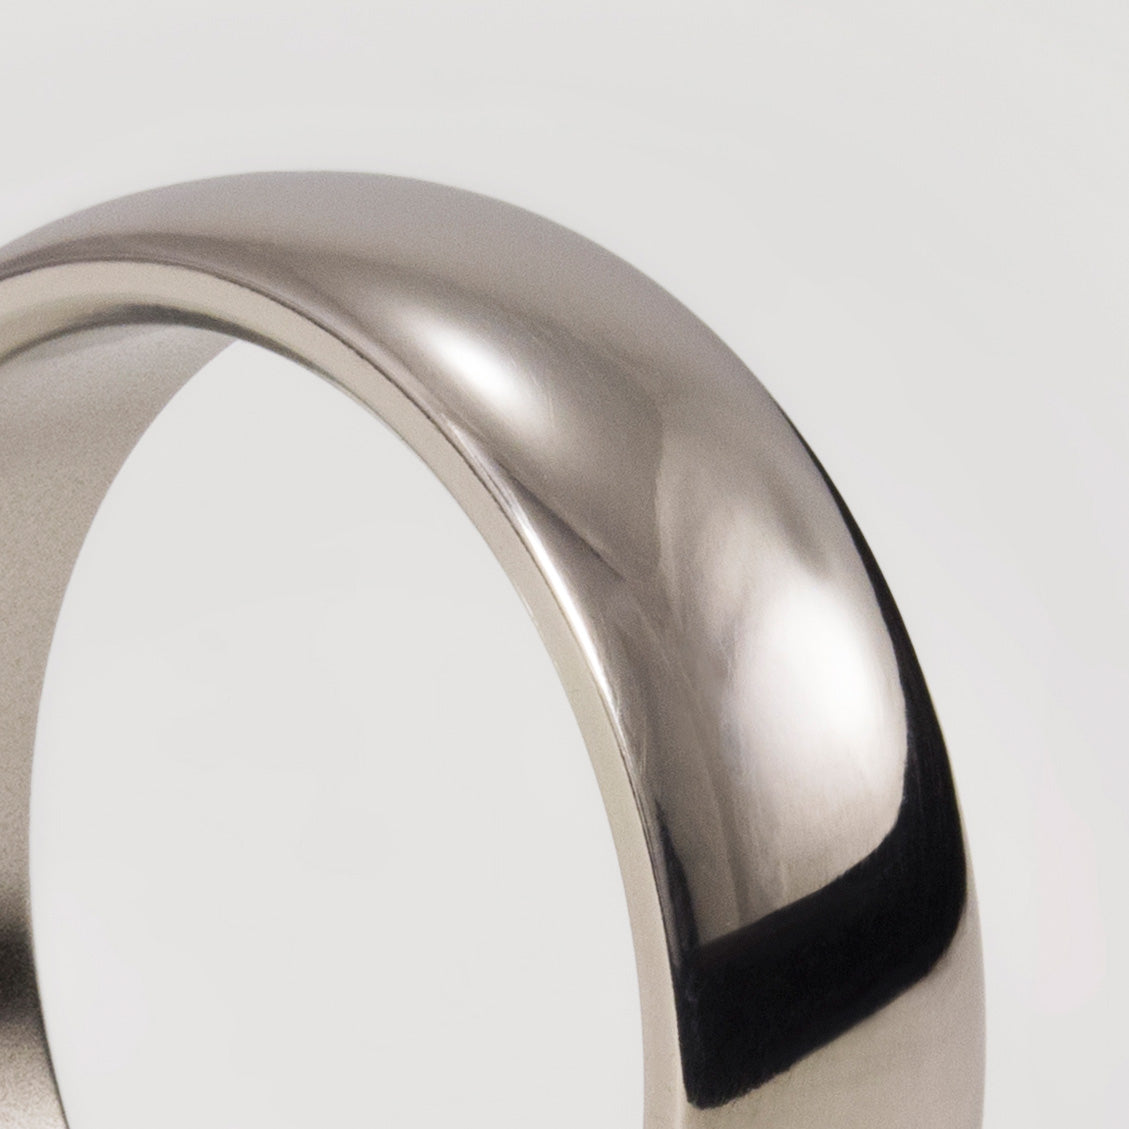 Rounded polished titanium ring